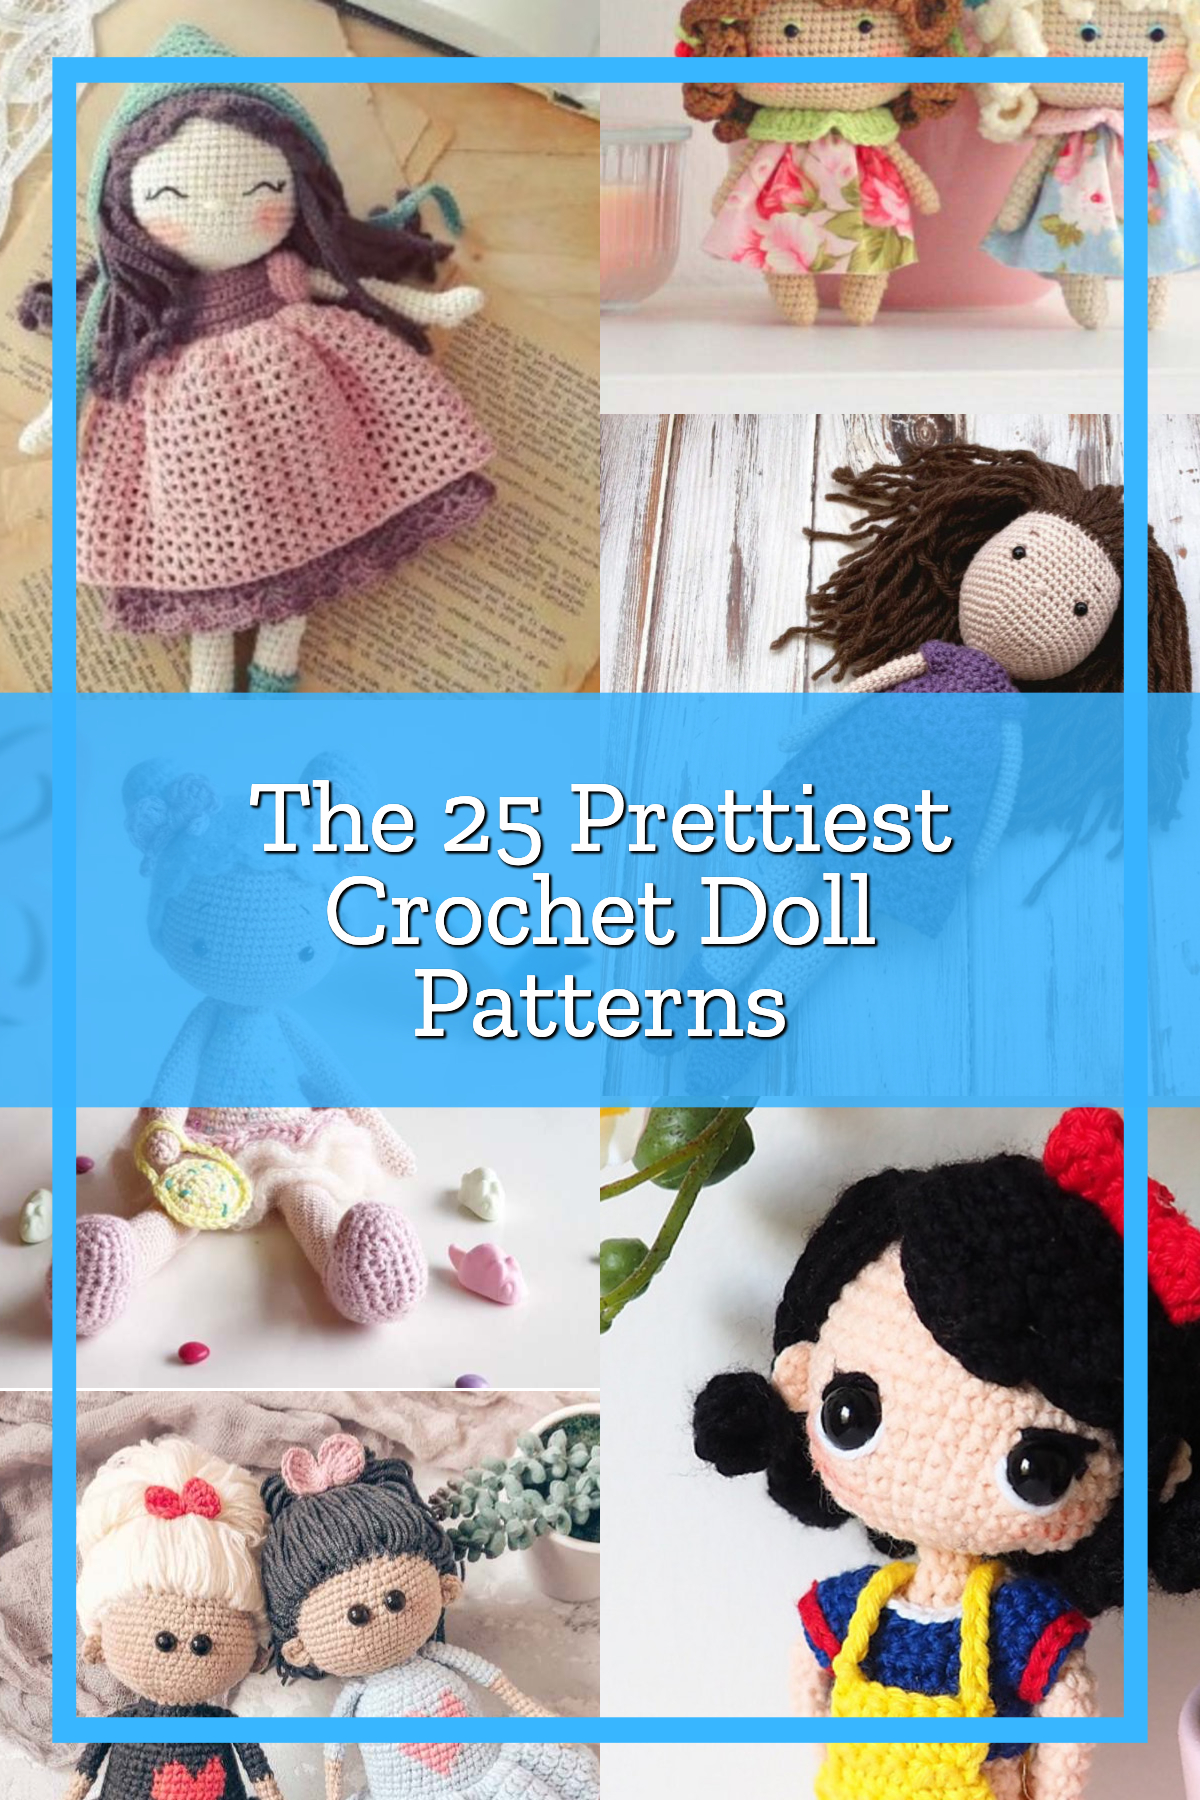 Easy Crochet Doll Tutorial - Written Pattern & Video Tutorial